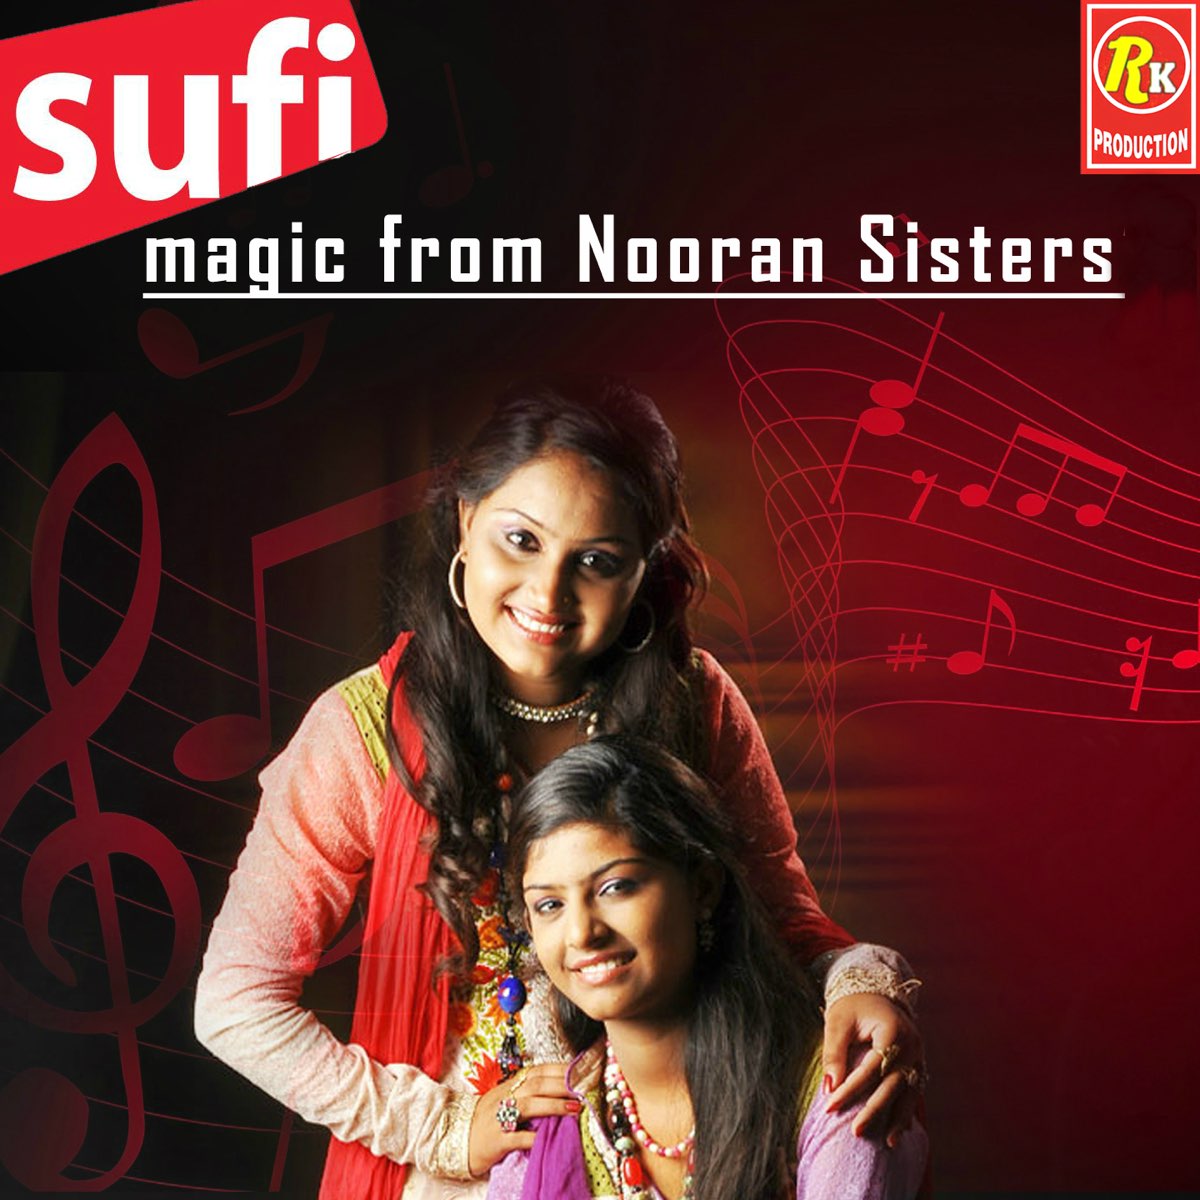 Nooran sisters. Nooran sisters Джиоти. Jyoti Nooran Nooran. Nooran sister's Patakha Guddi | Ali авто биграфия. Nooran sisters биография.